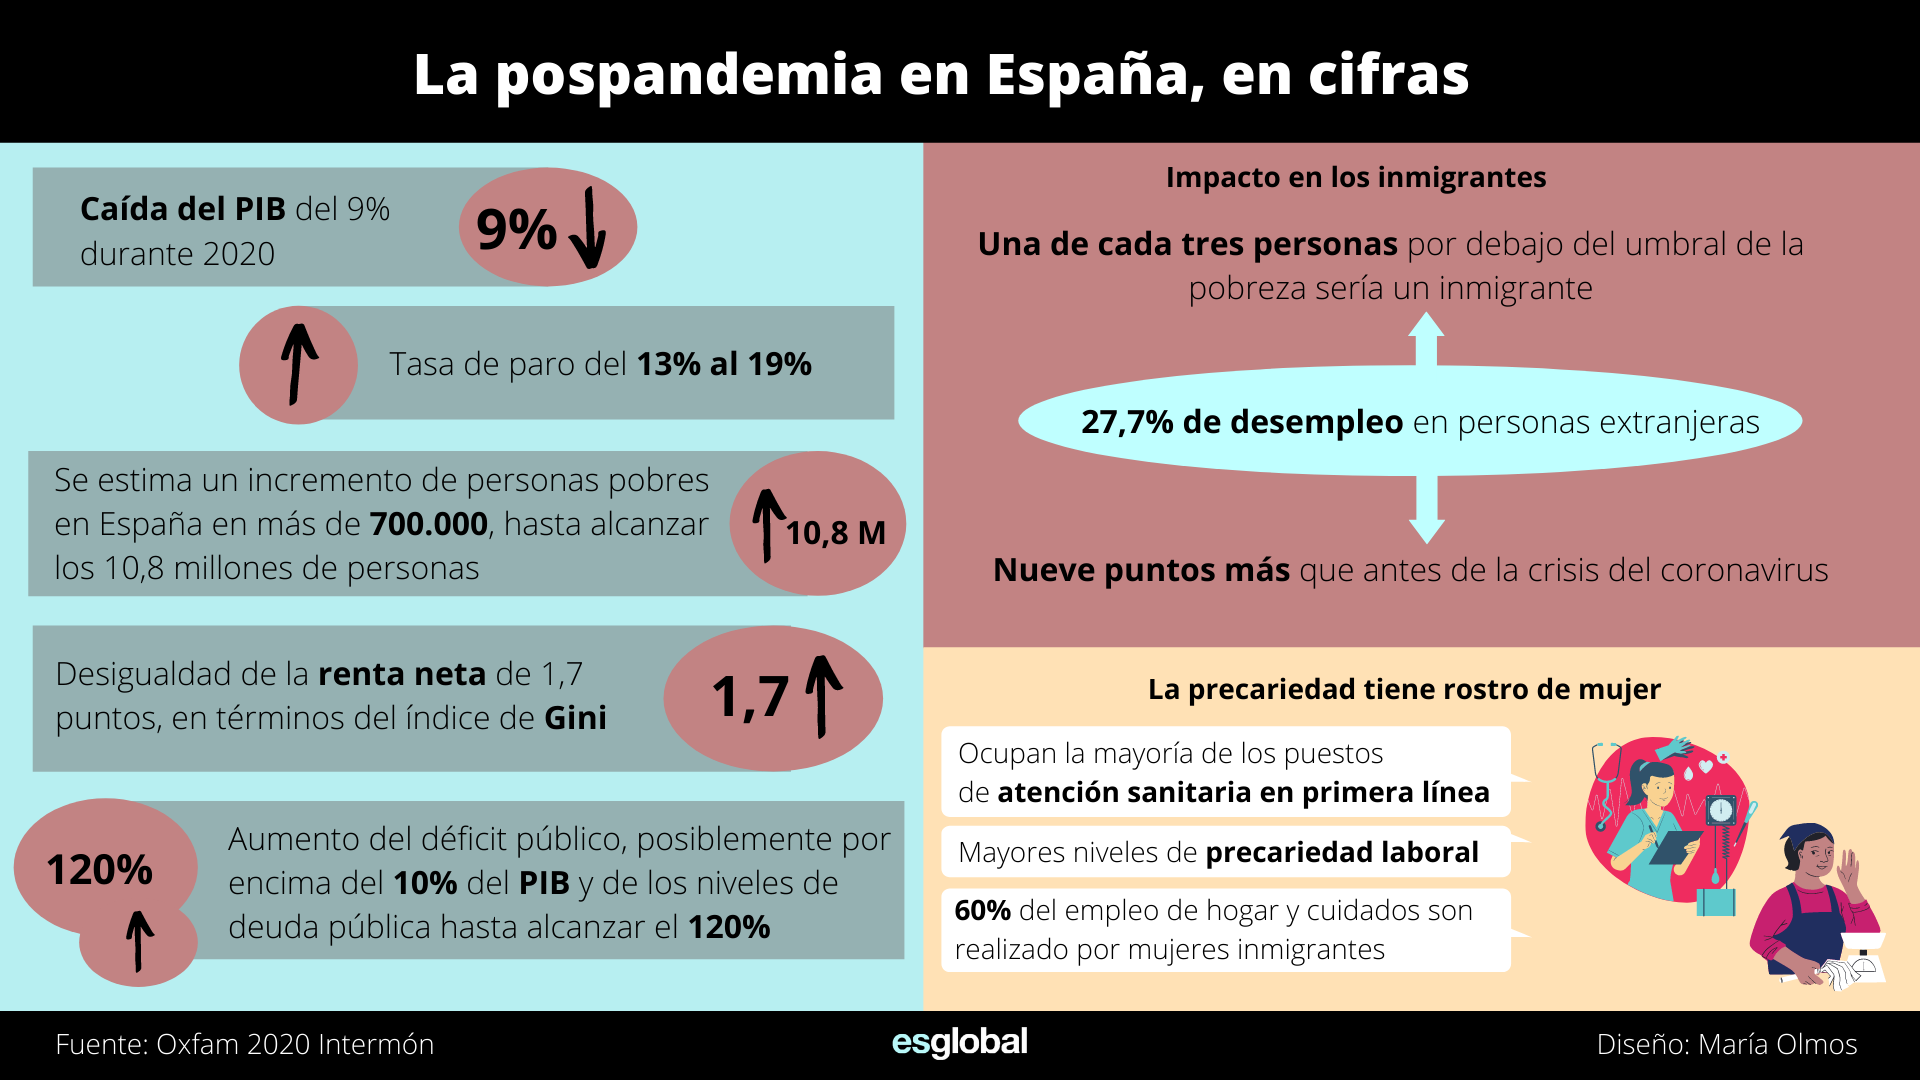 La postpandemia en España, en cifras